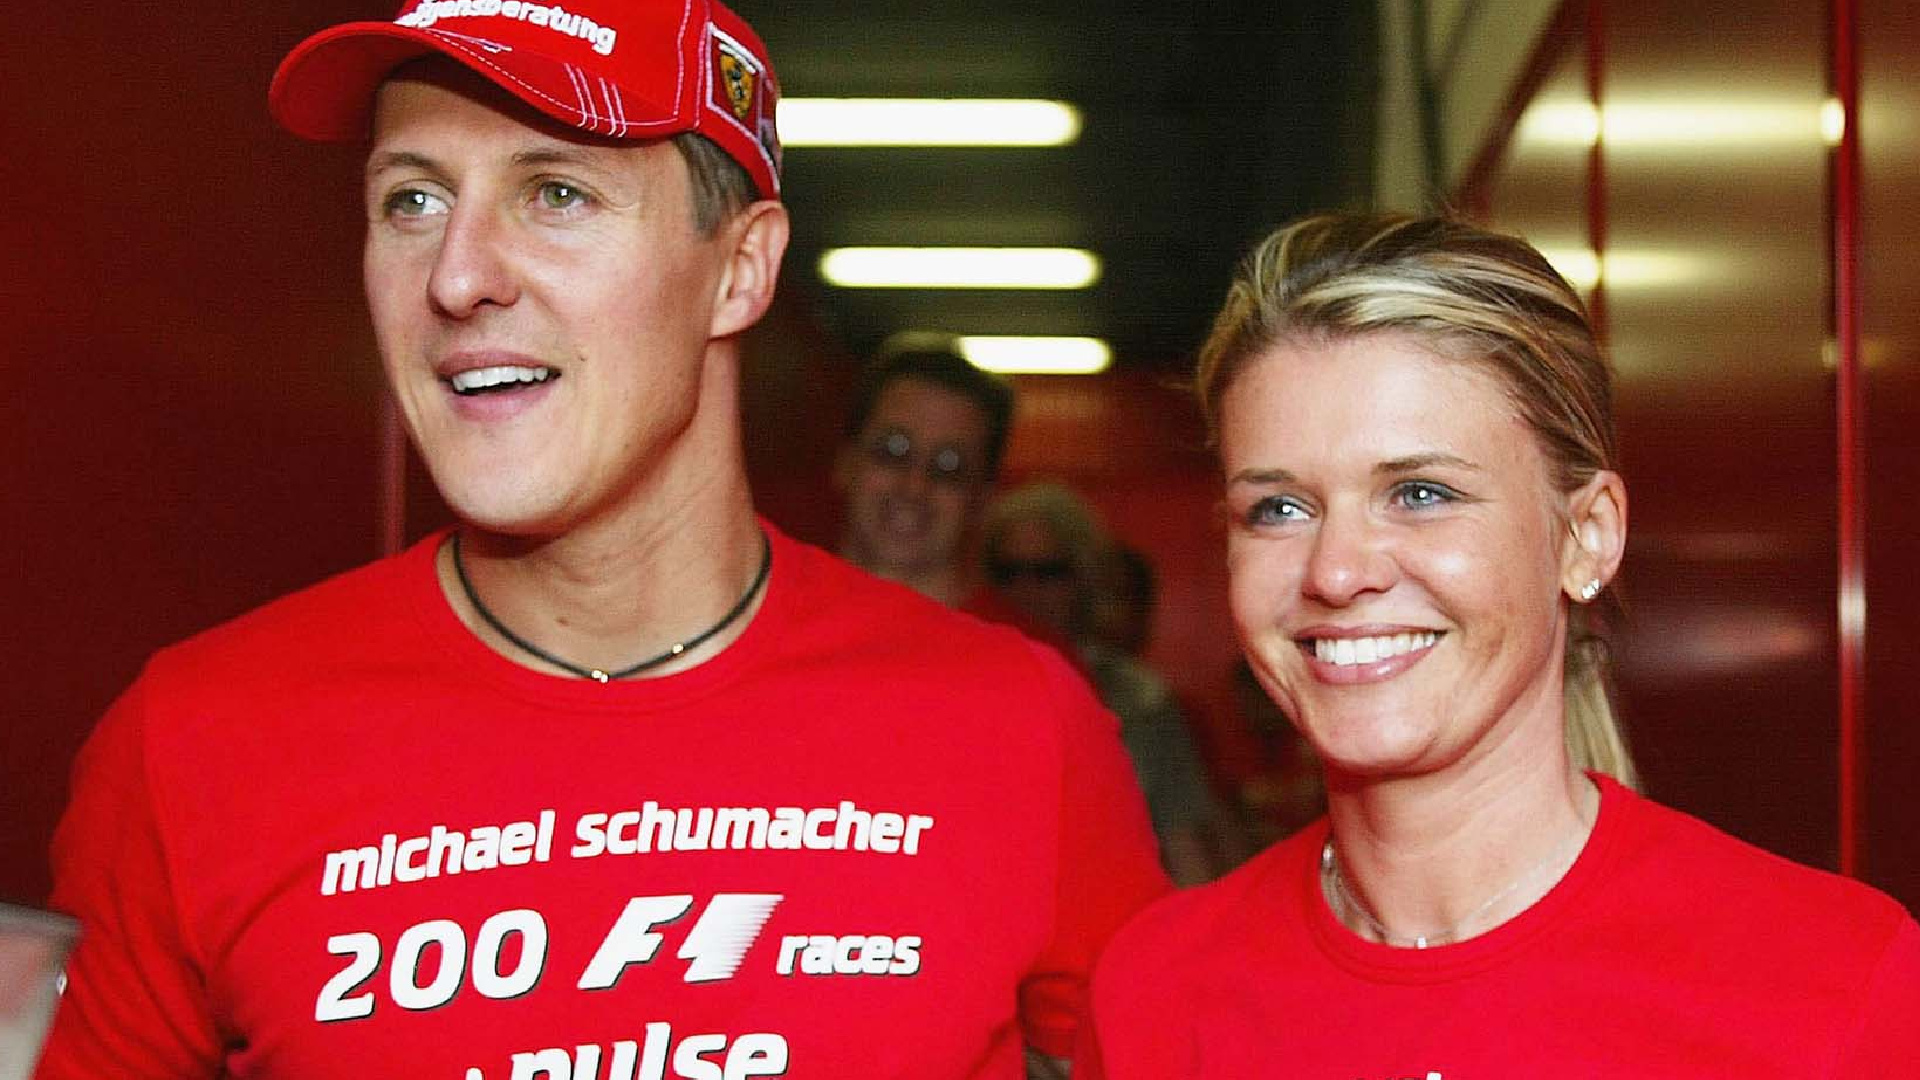 La decisione radicale che ha dovuto prendere la moglie di Michael Schumacher